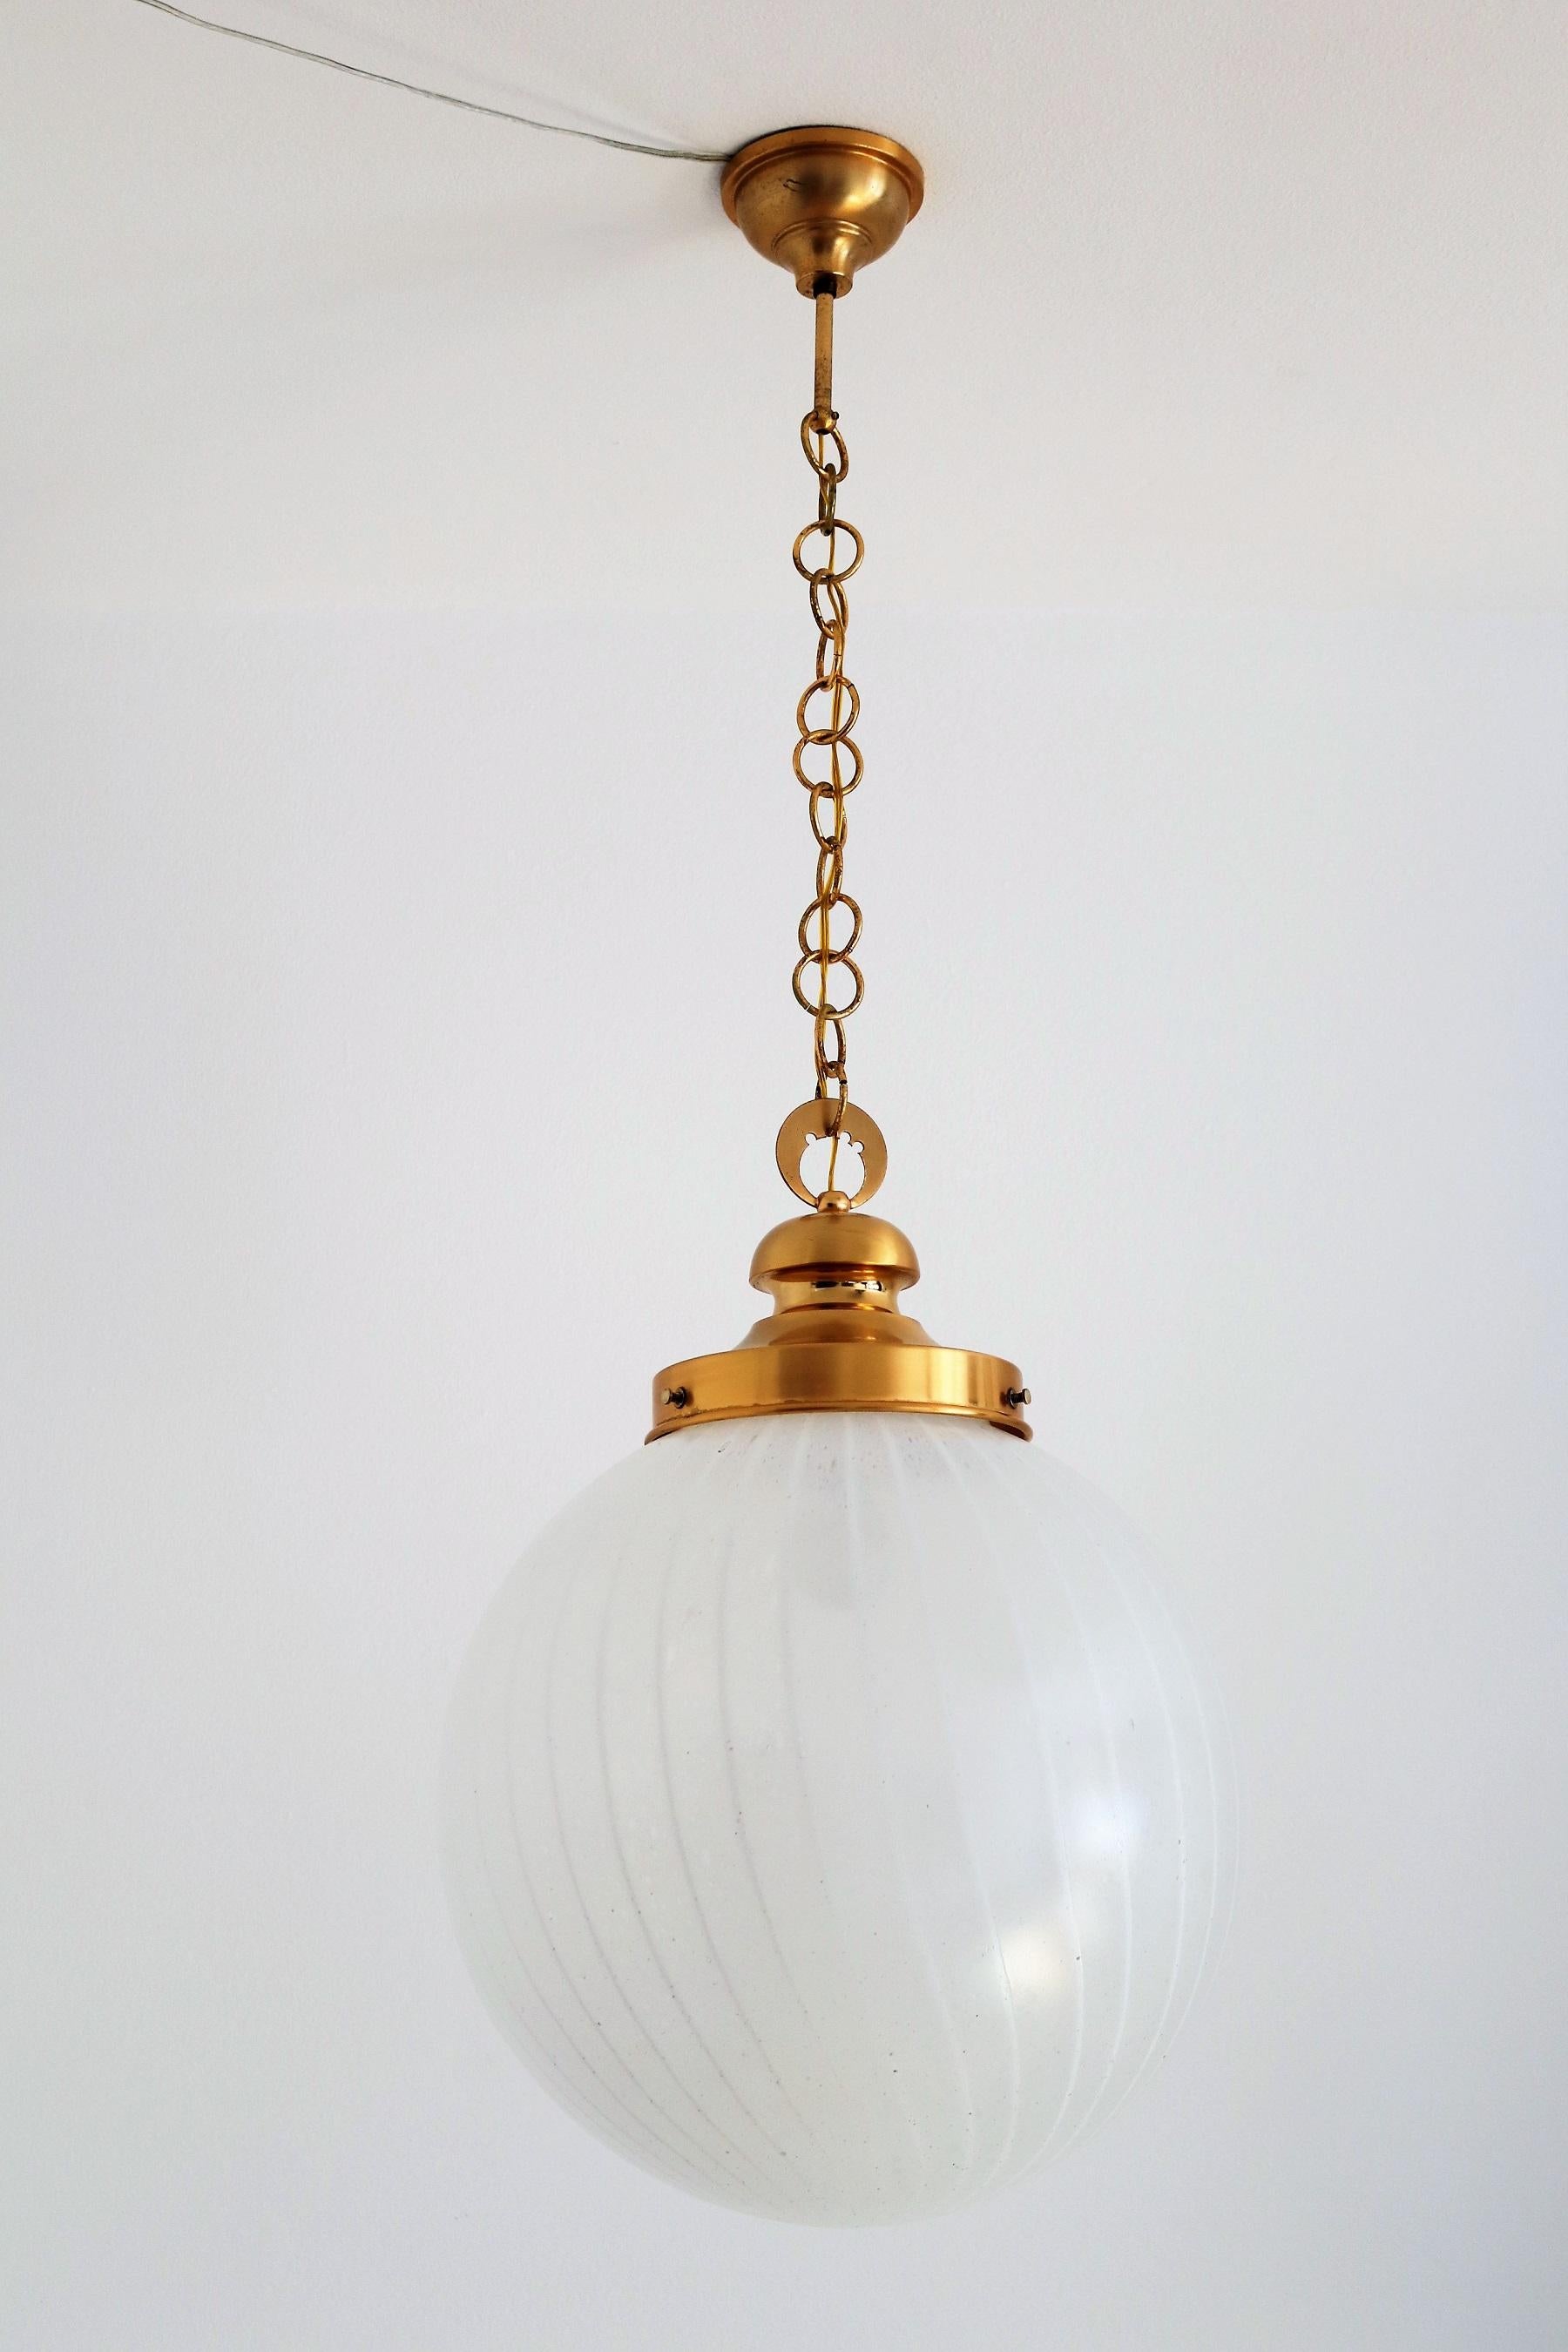 Schöne und große elegante Murano Glas Kugel Pendelleuchte mit starken Messing, Gold Metall Details. Hergestellt in Italien von Lampter in den 1960er Jahren.
Das Murano-Glas in schneeweißer Farbe mit weißem, dünnem Wirbel hat unzählige kleine Blasen